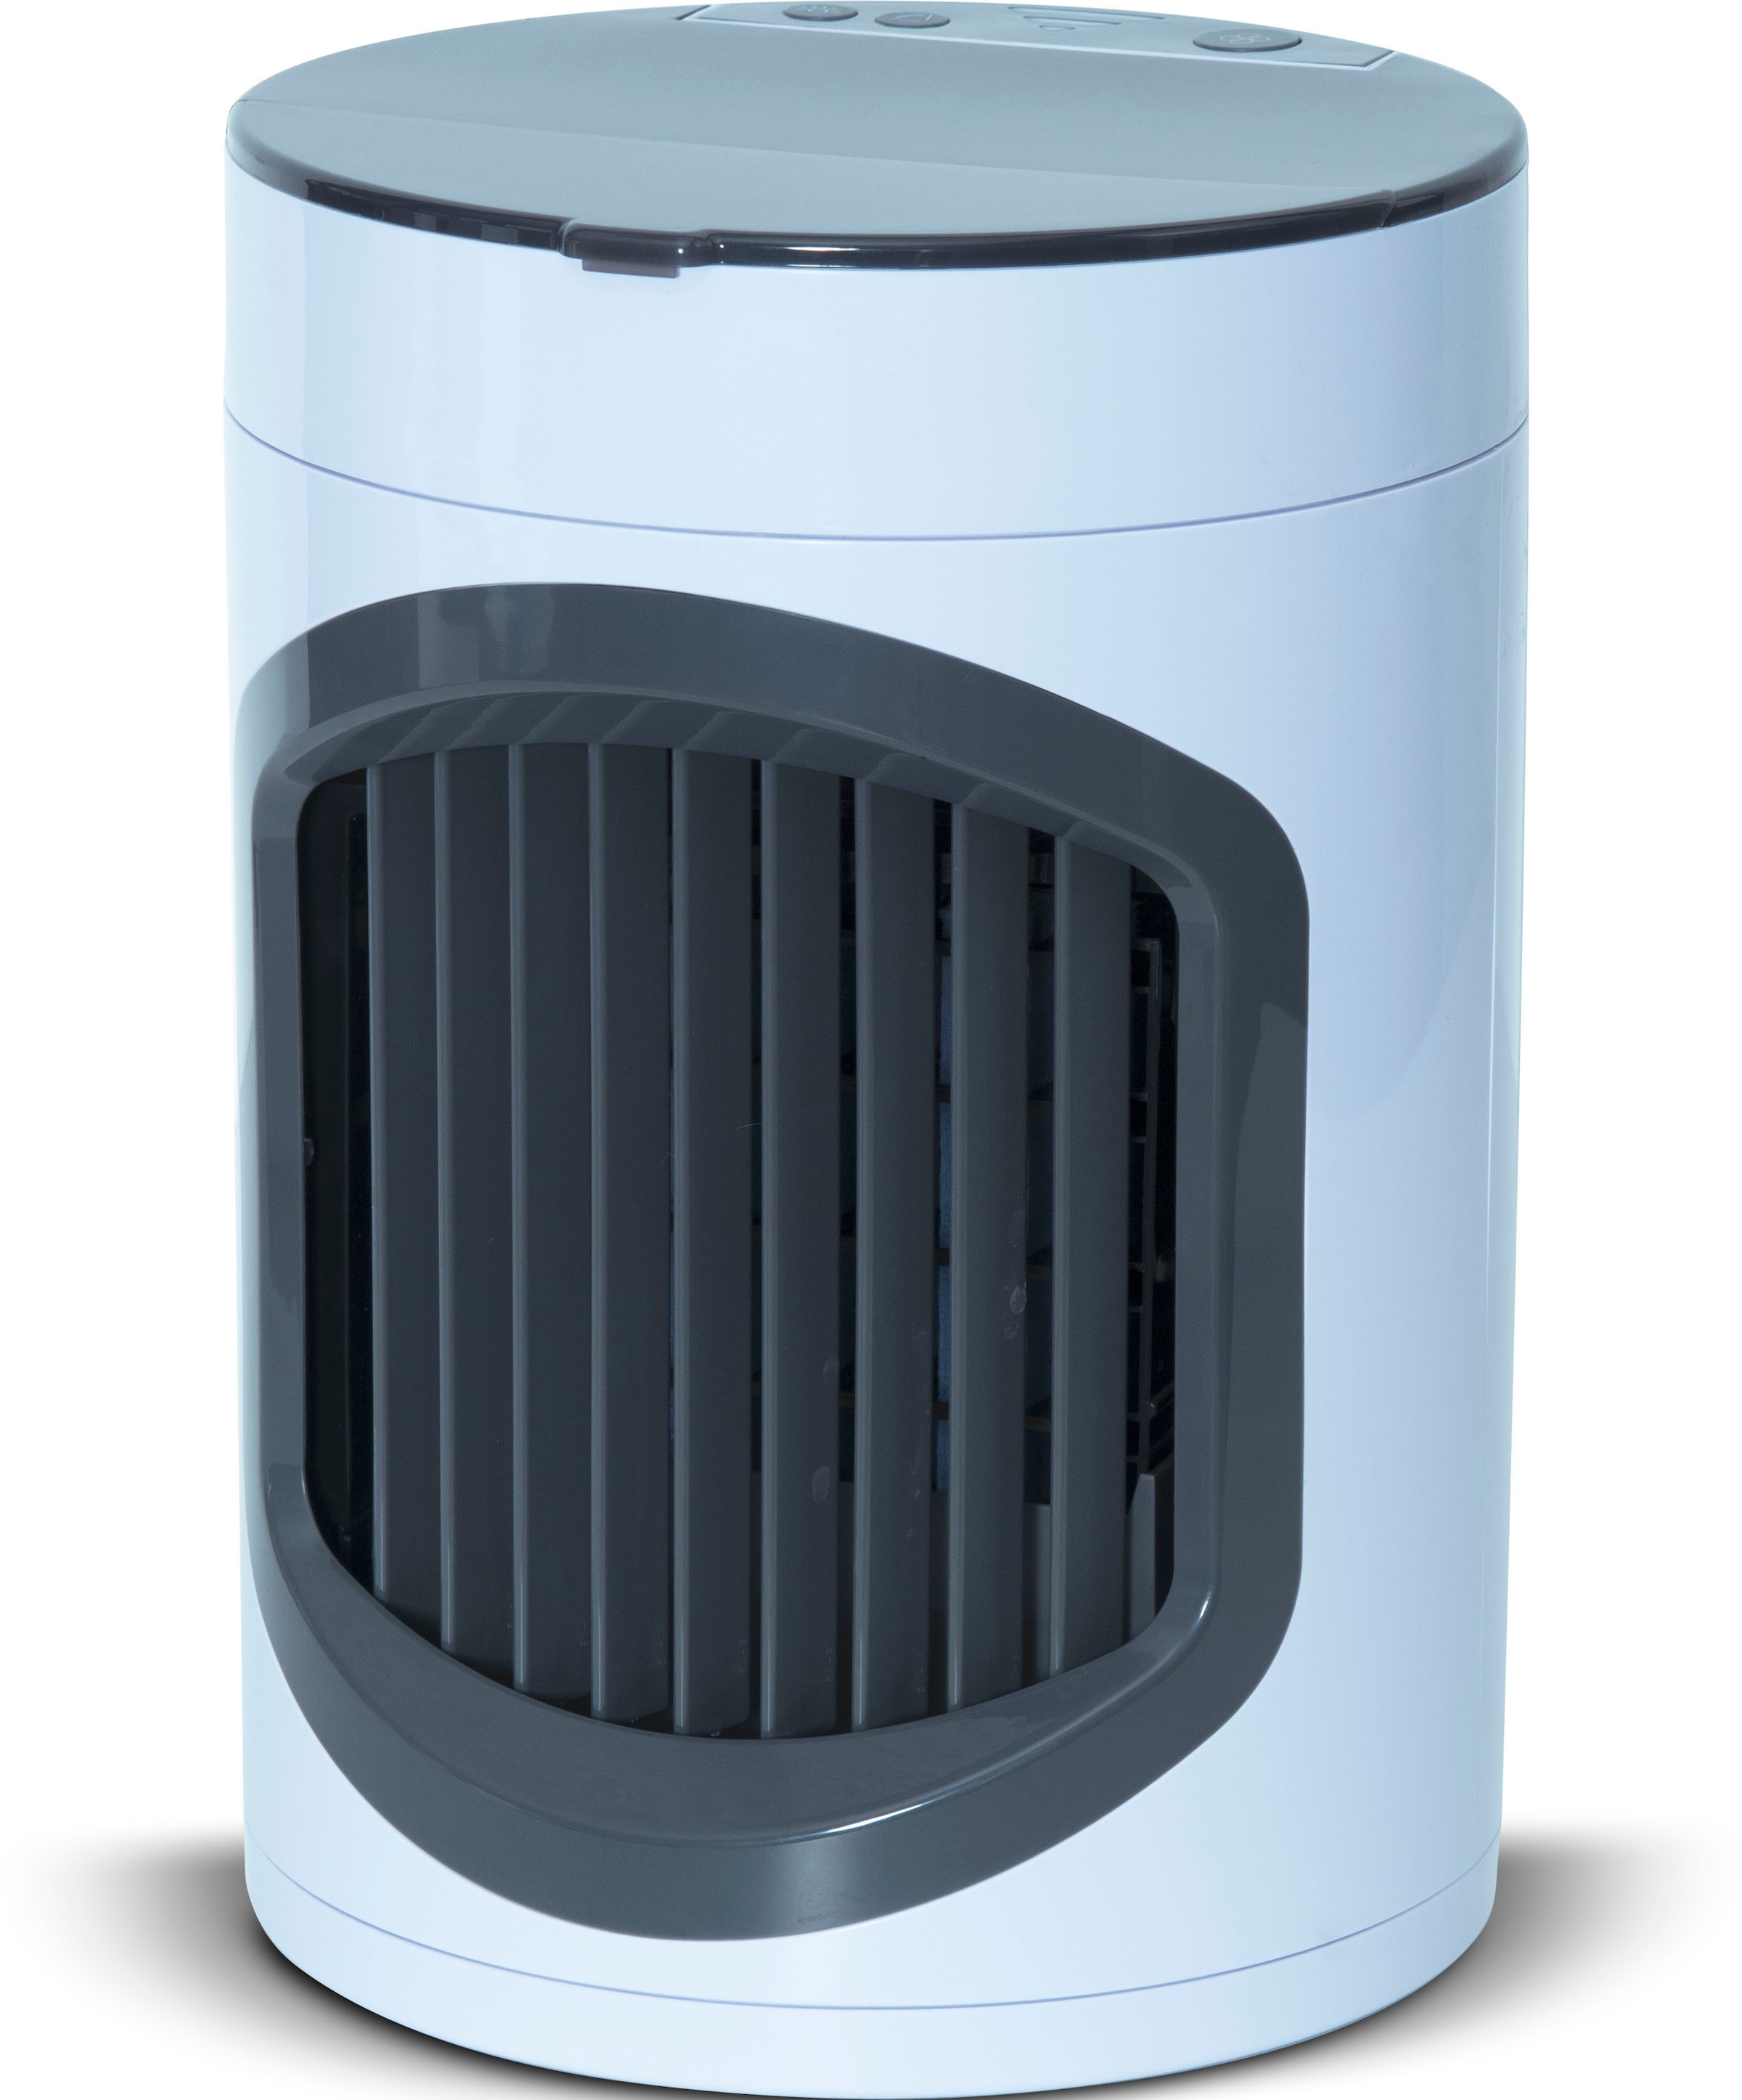 MediaShop Ventilatorkombigerät »Smart Chill«, Luftkühler